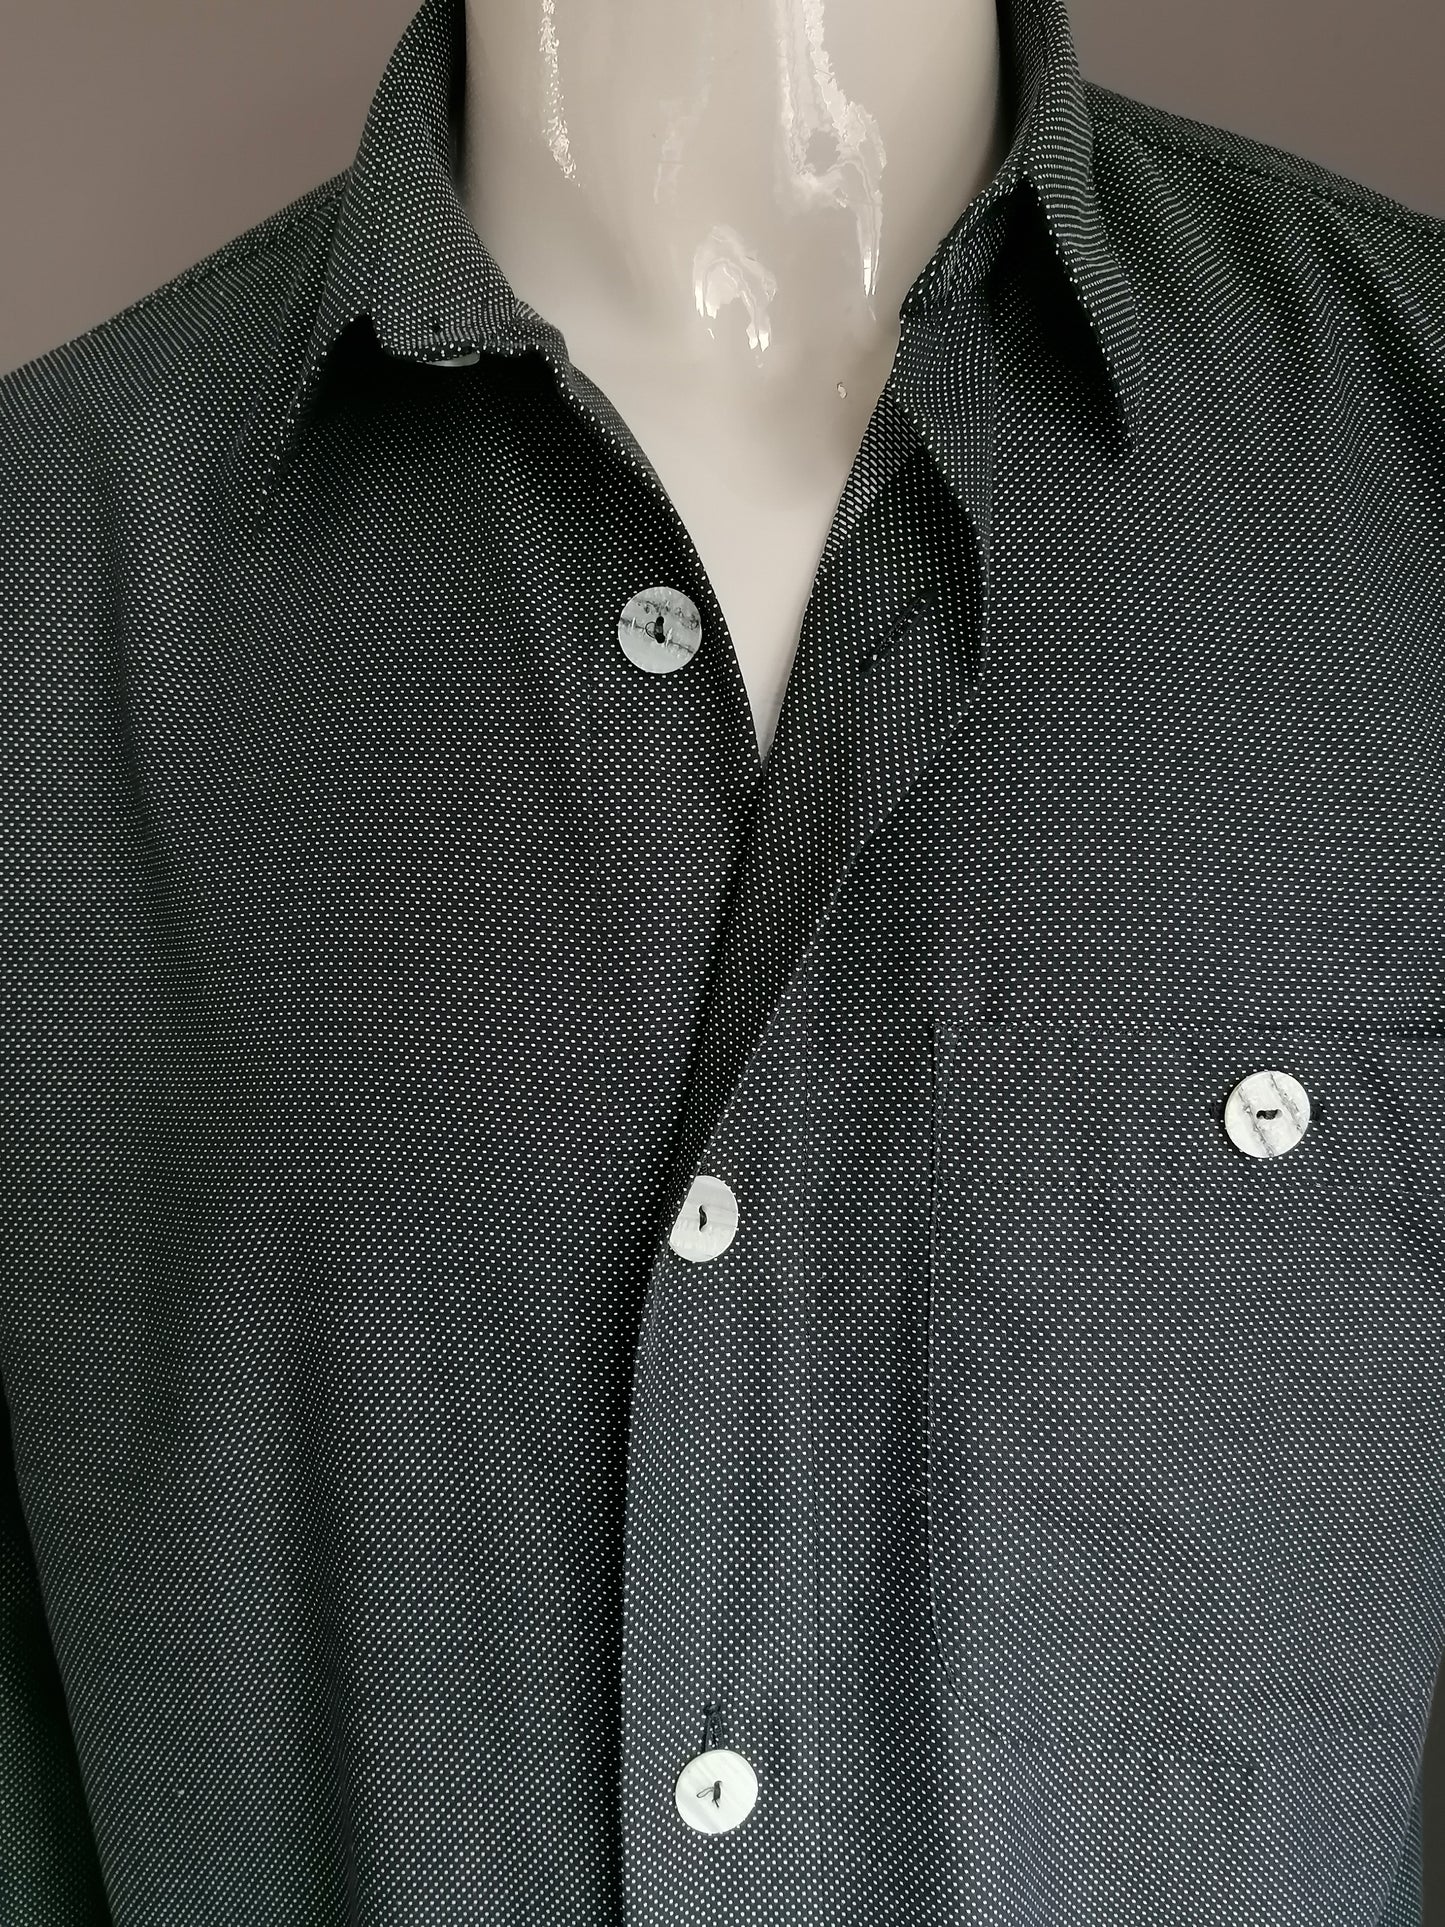 Vintage Signum overhemd. Grote knopen. Zwart Wit gestippeld. Maat oversized M >> XL